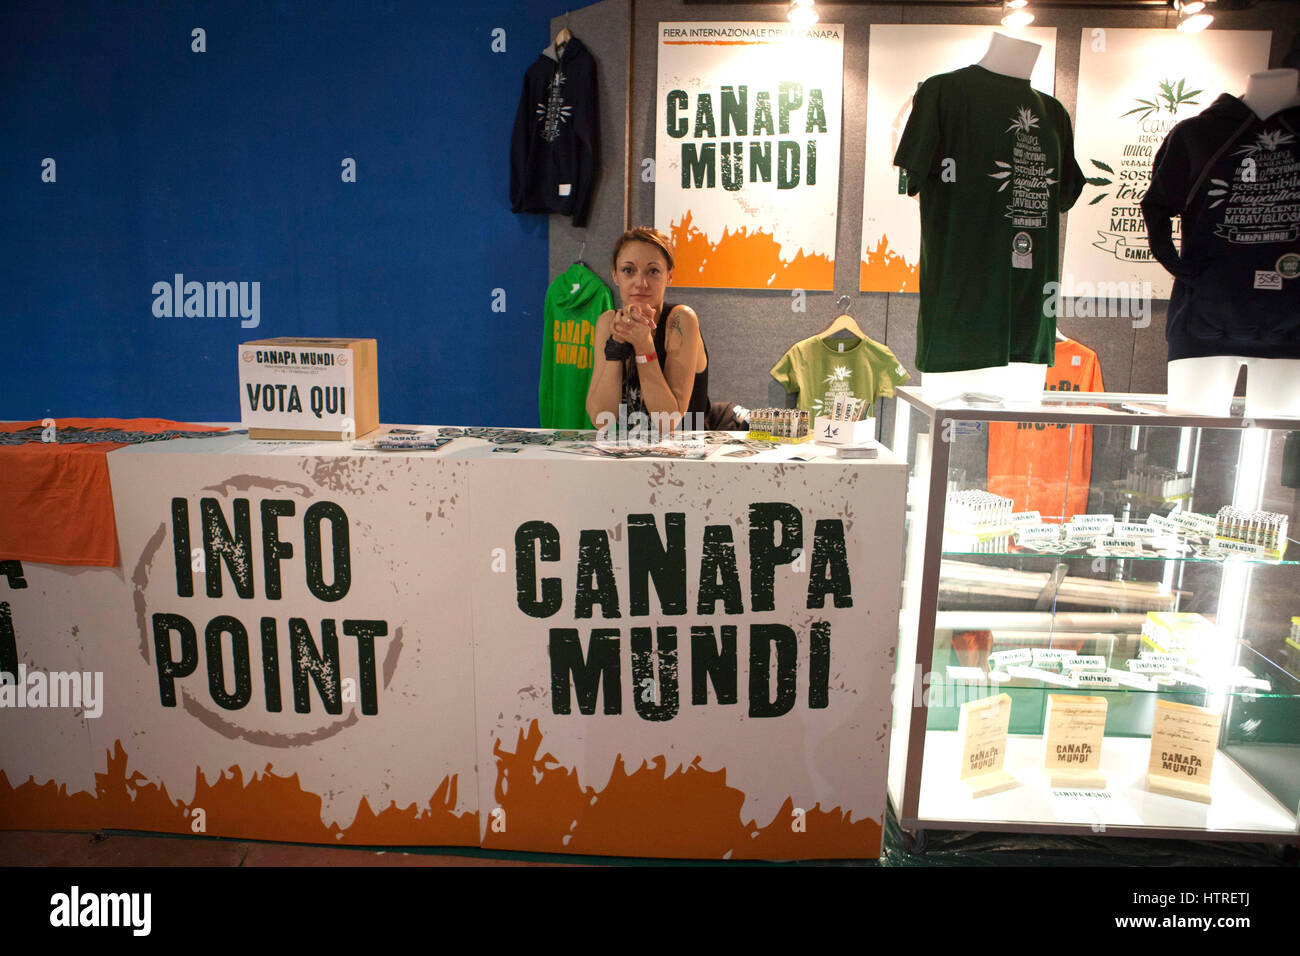 Canapa Mundi, der internationalen Messe, jetzt in seiner vierten Auflage, mit Produkten, die im Zusammenhang mit Nahrung, Kunsthandwerk, Kosmetik, Hanfanbau, Rom Hanf, Stockfoto